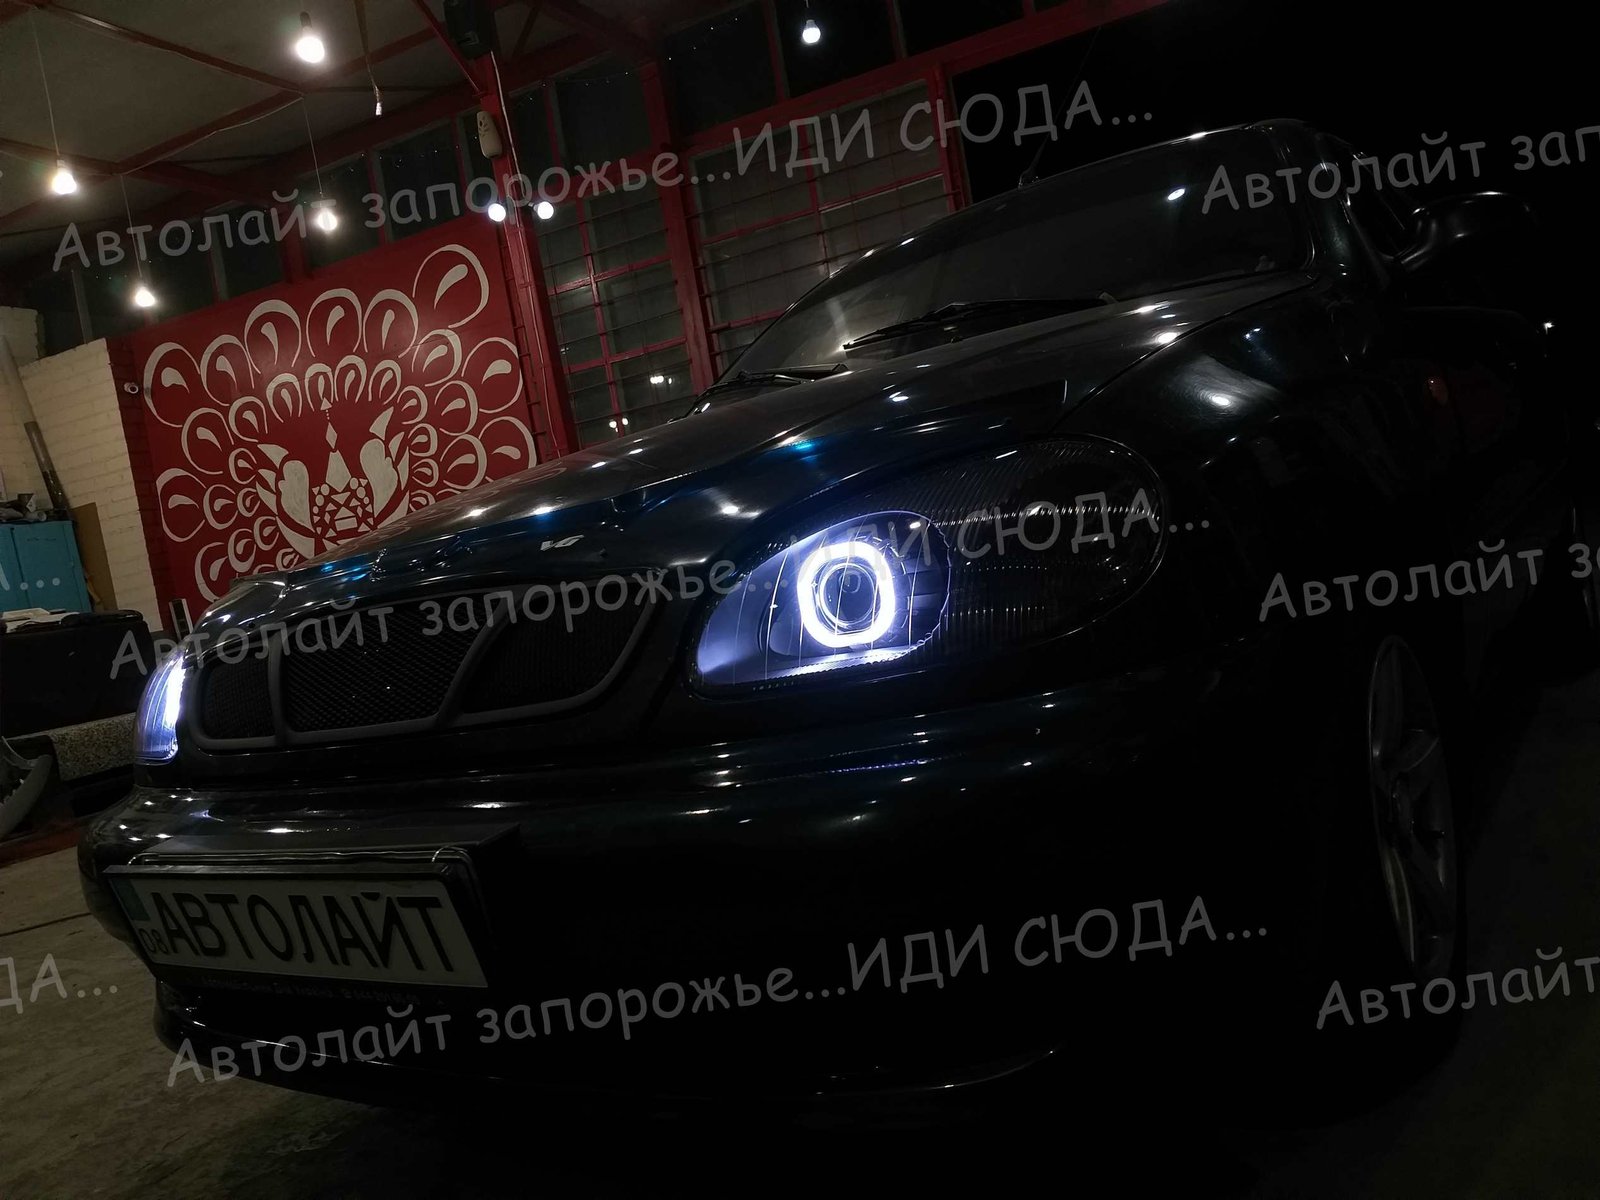 Фотогалерея автосвет 5 🚩AVTOLIGHT🚩КАЧЕСТВО 💯‼ студия "Автолайт" Качественный автосвет в Запорожье